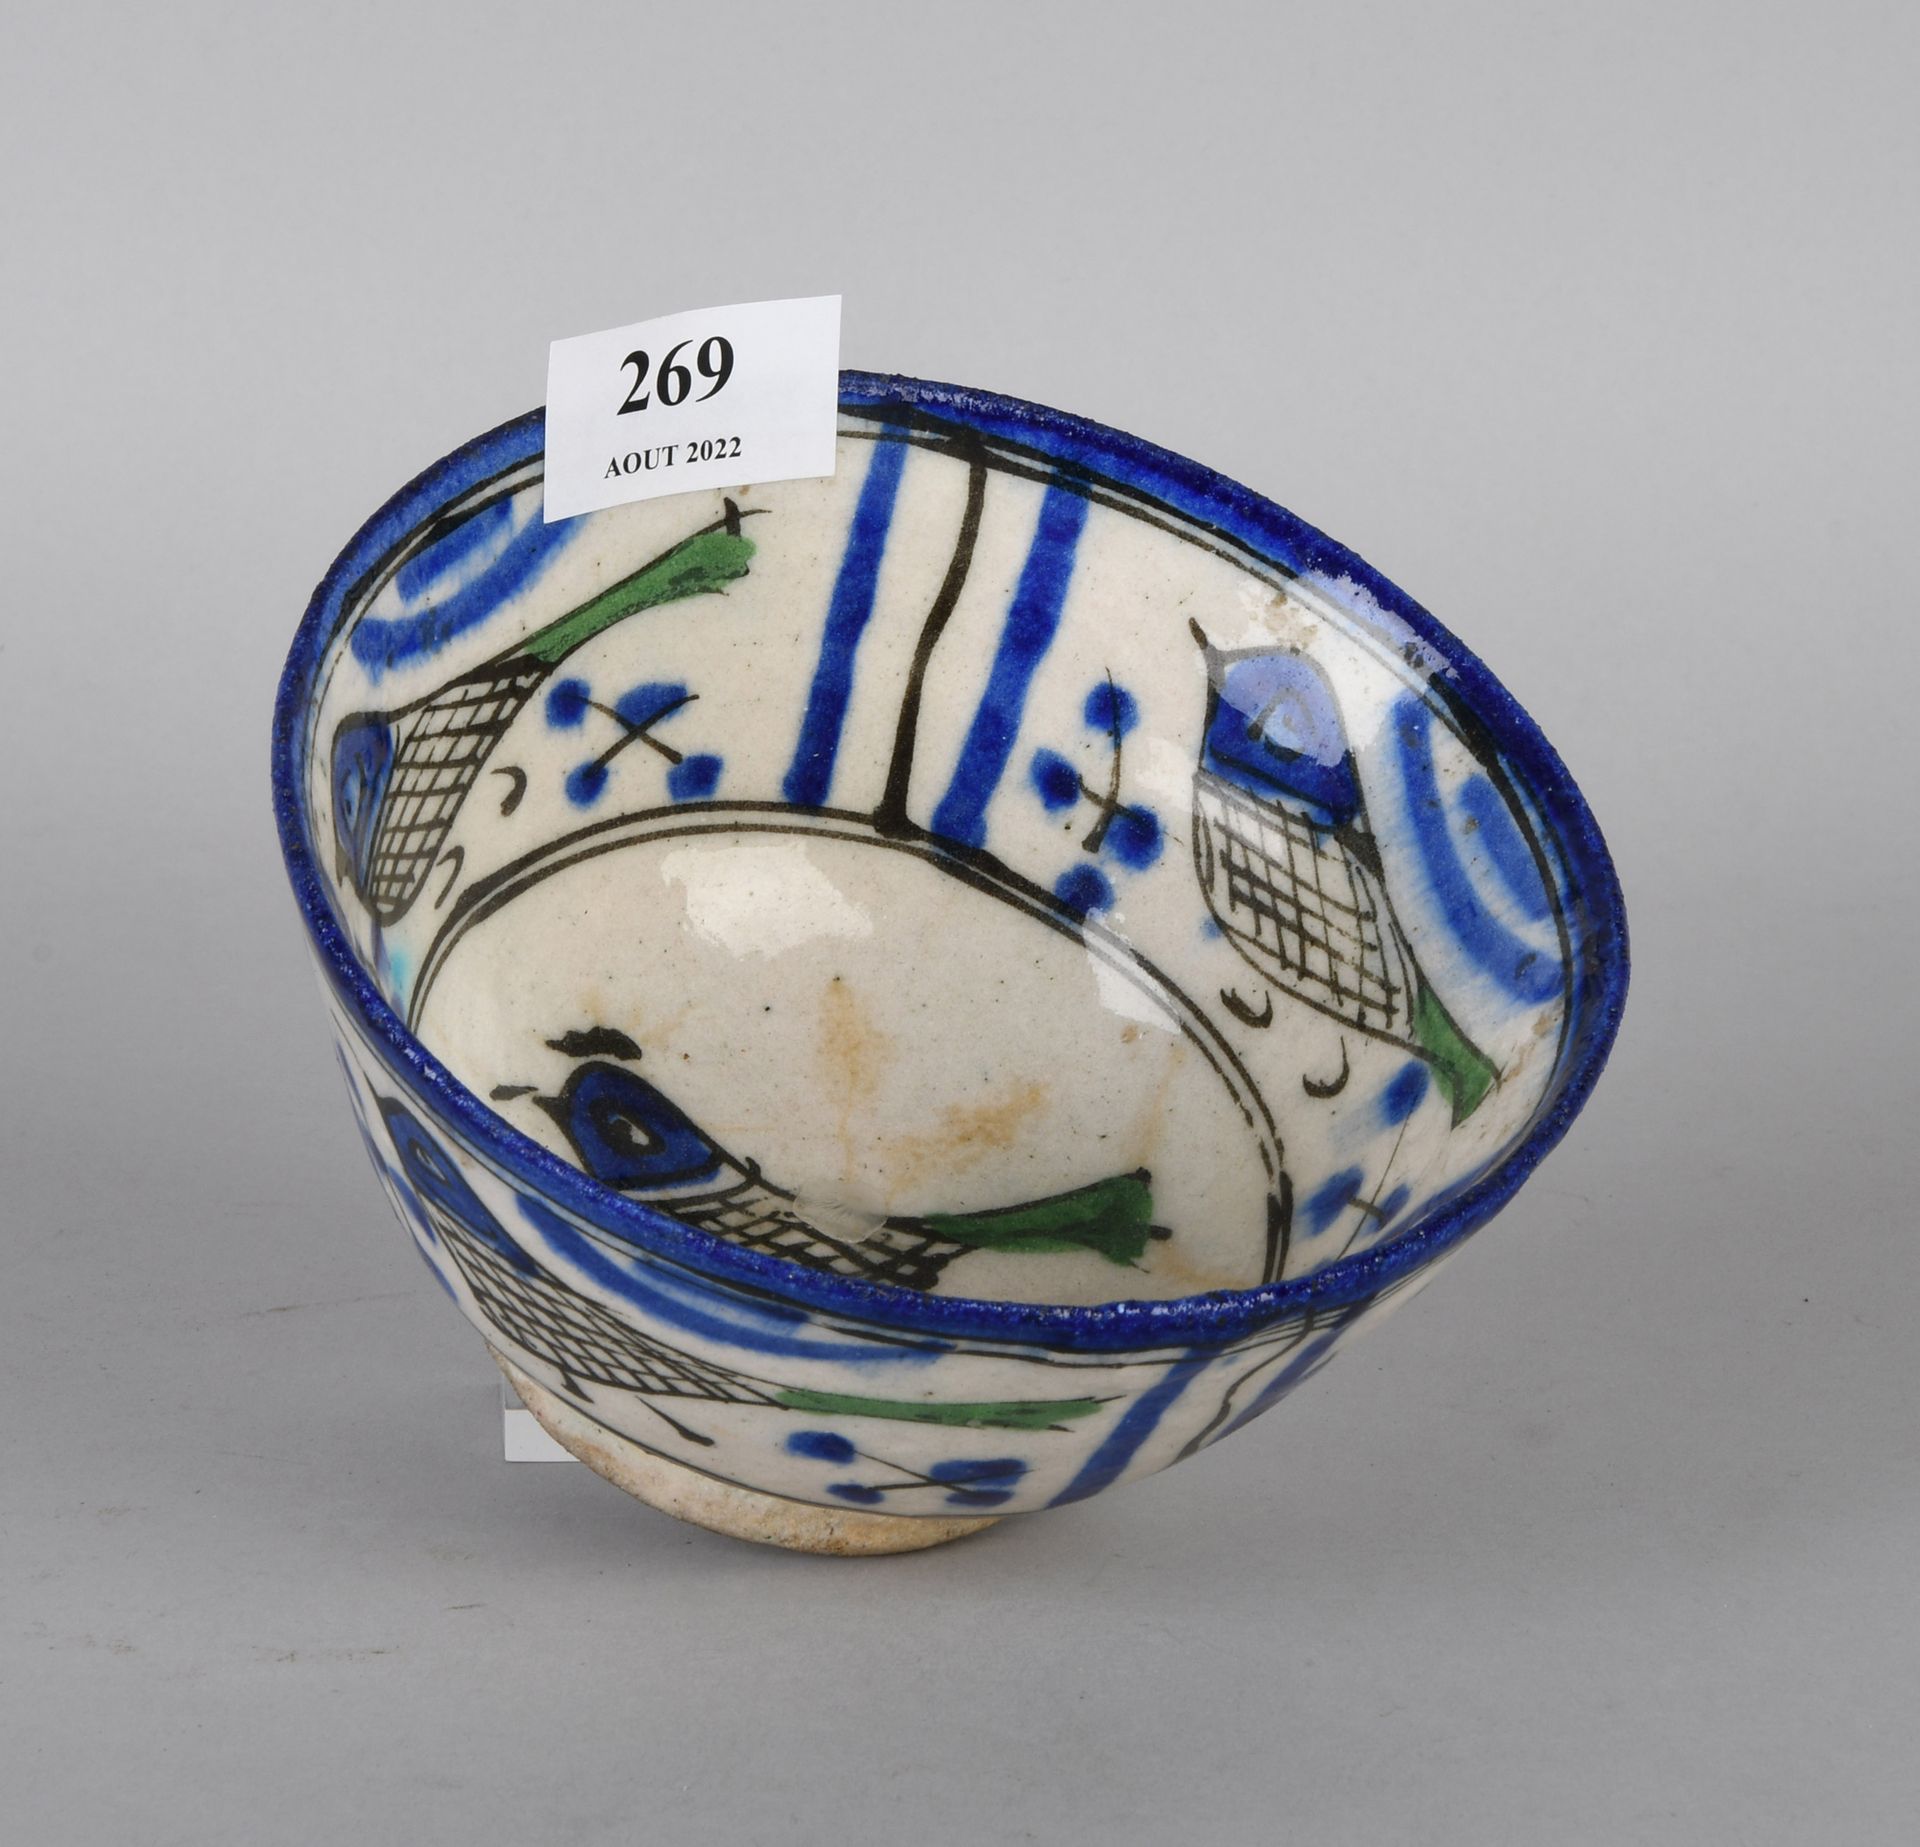 Null Cuenco de porcelana policromada del siglo XVIII con decoración de pájaros

&hellip;